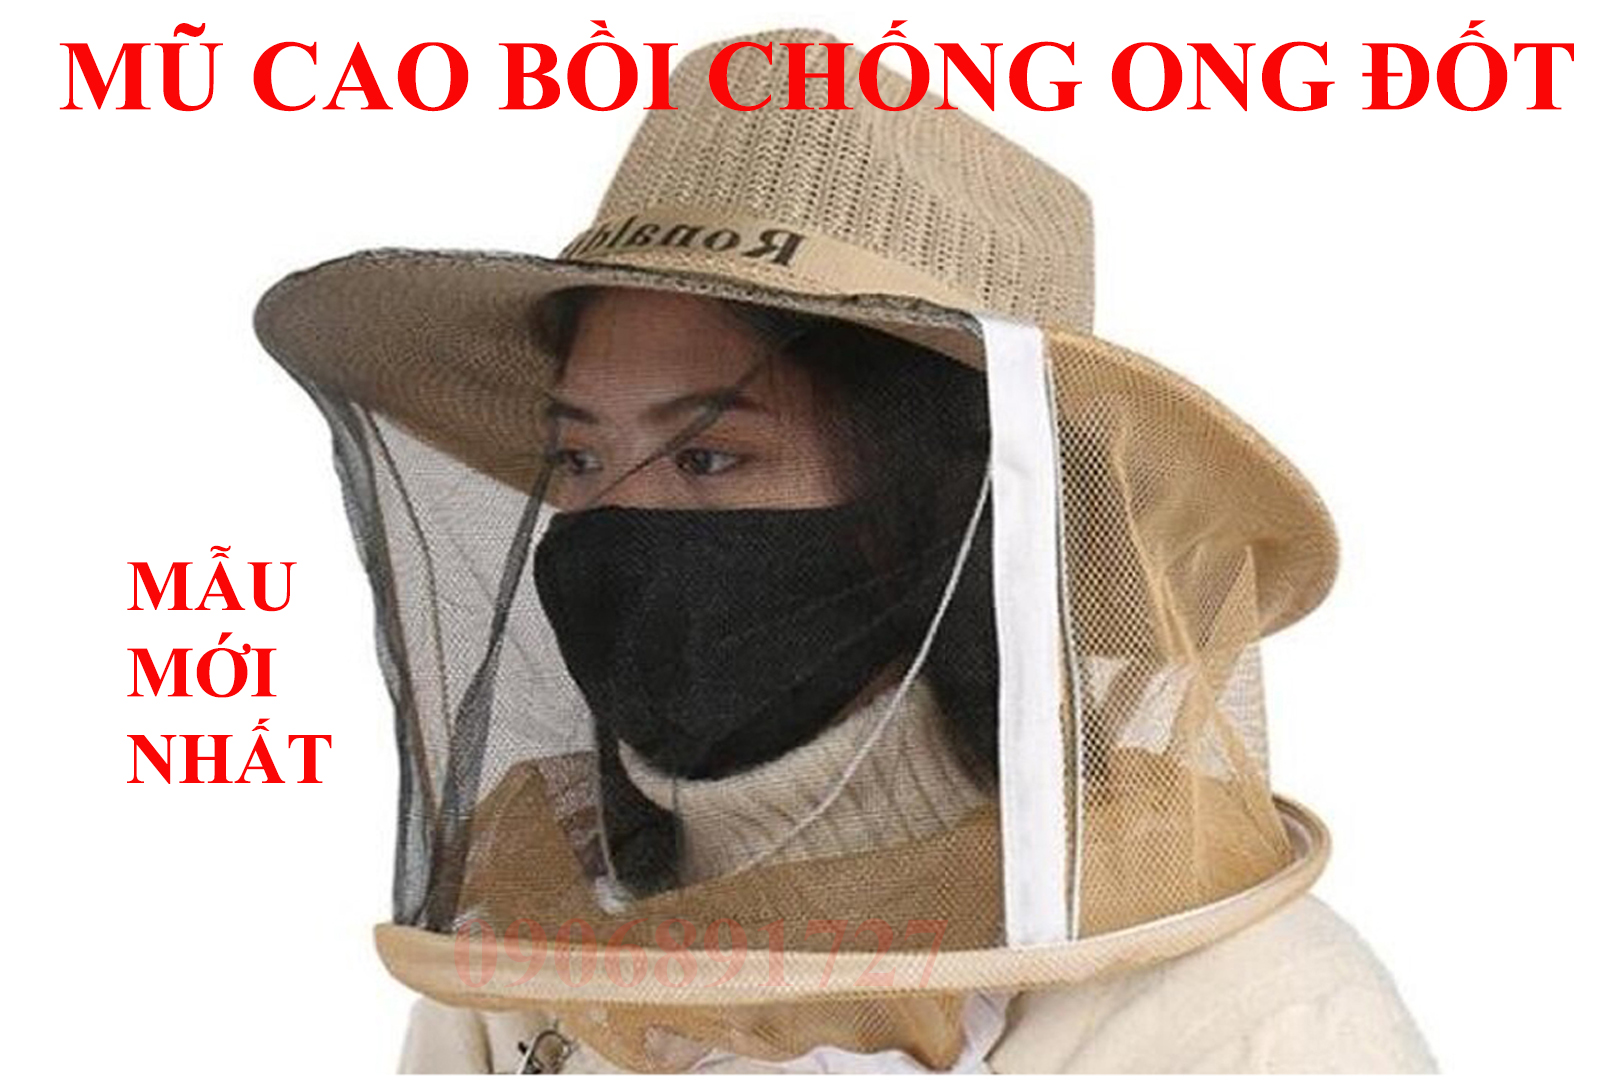 Hồ Chí Minh - Bình Xịt Khói Inox  Chống Ong Đốt - Giao Hàng Ngay